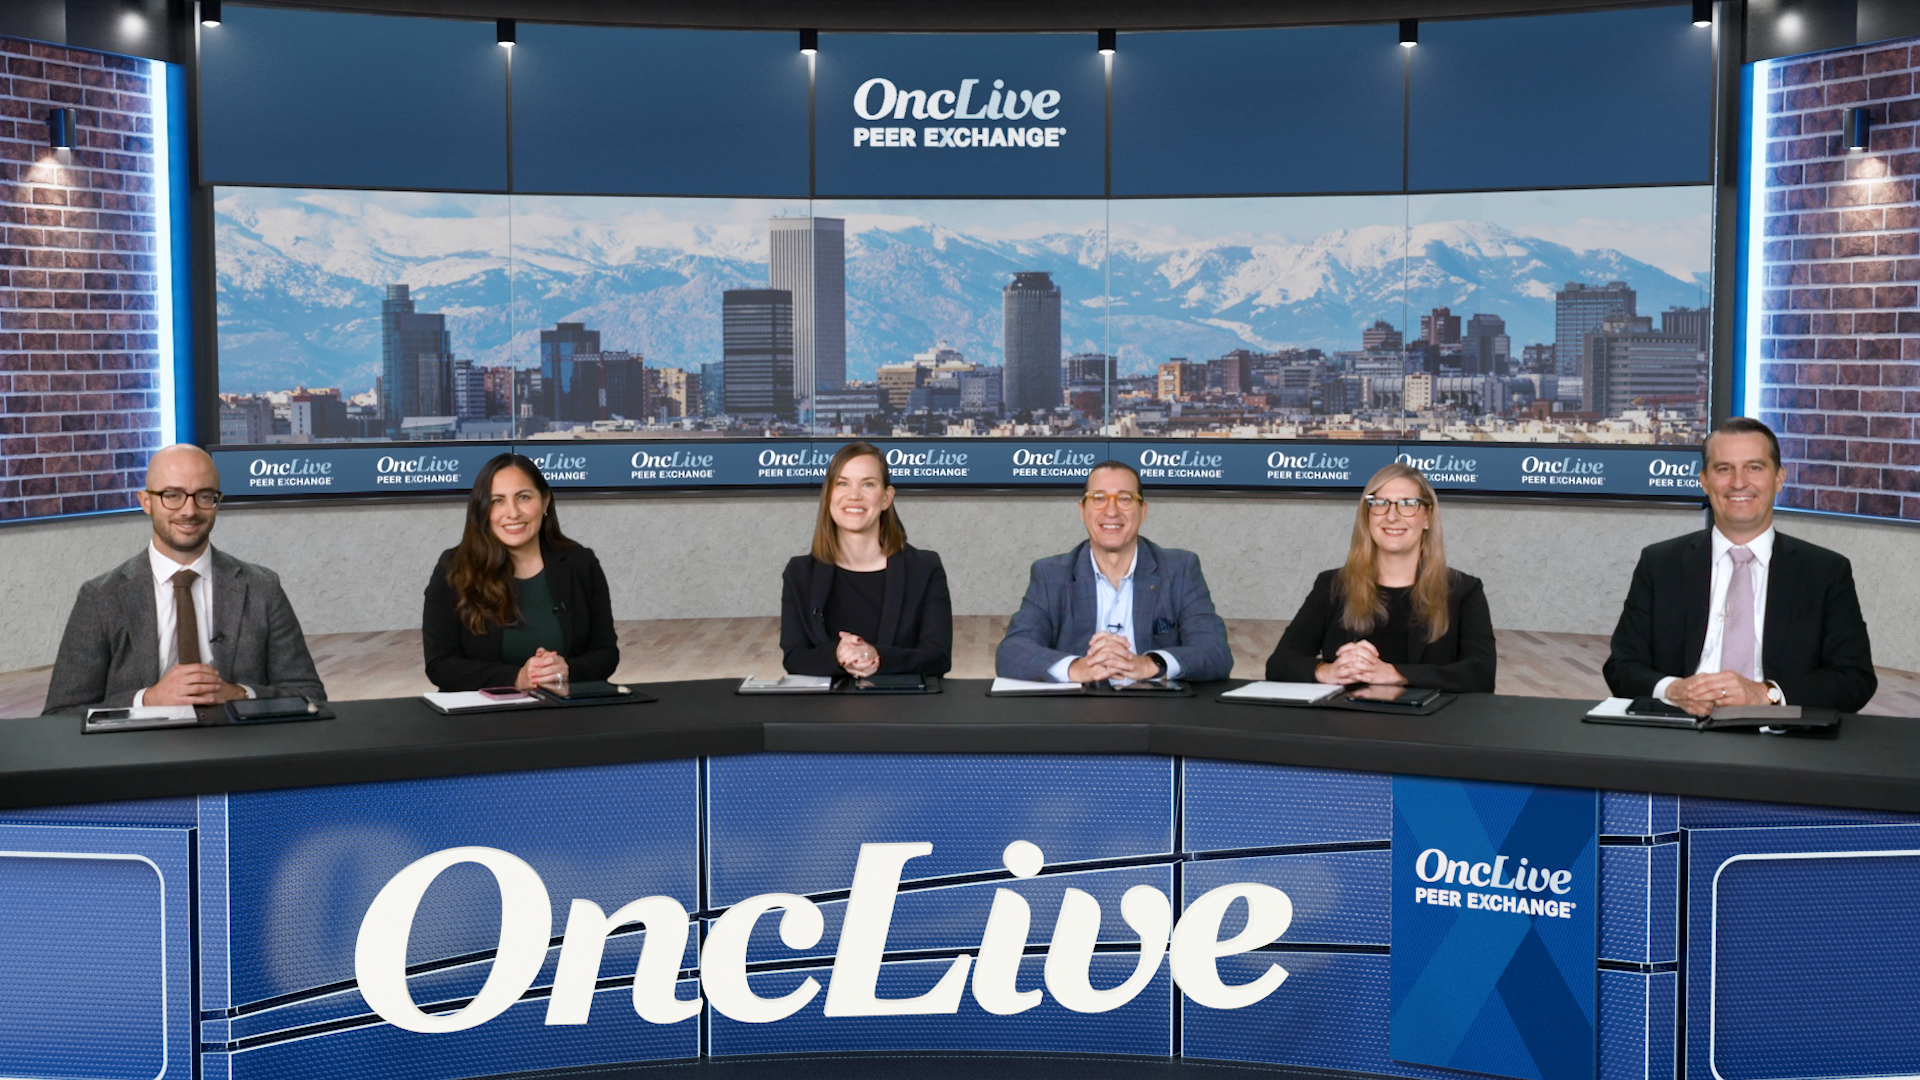 A panel of 6 experts on chronic lymphocytic leukemia